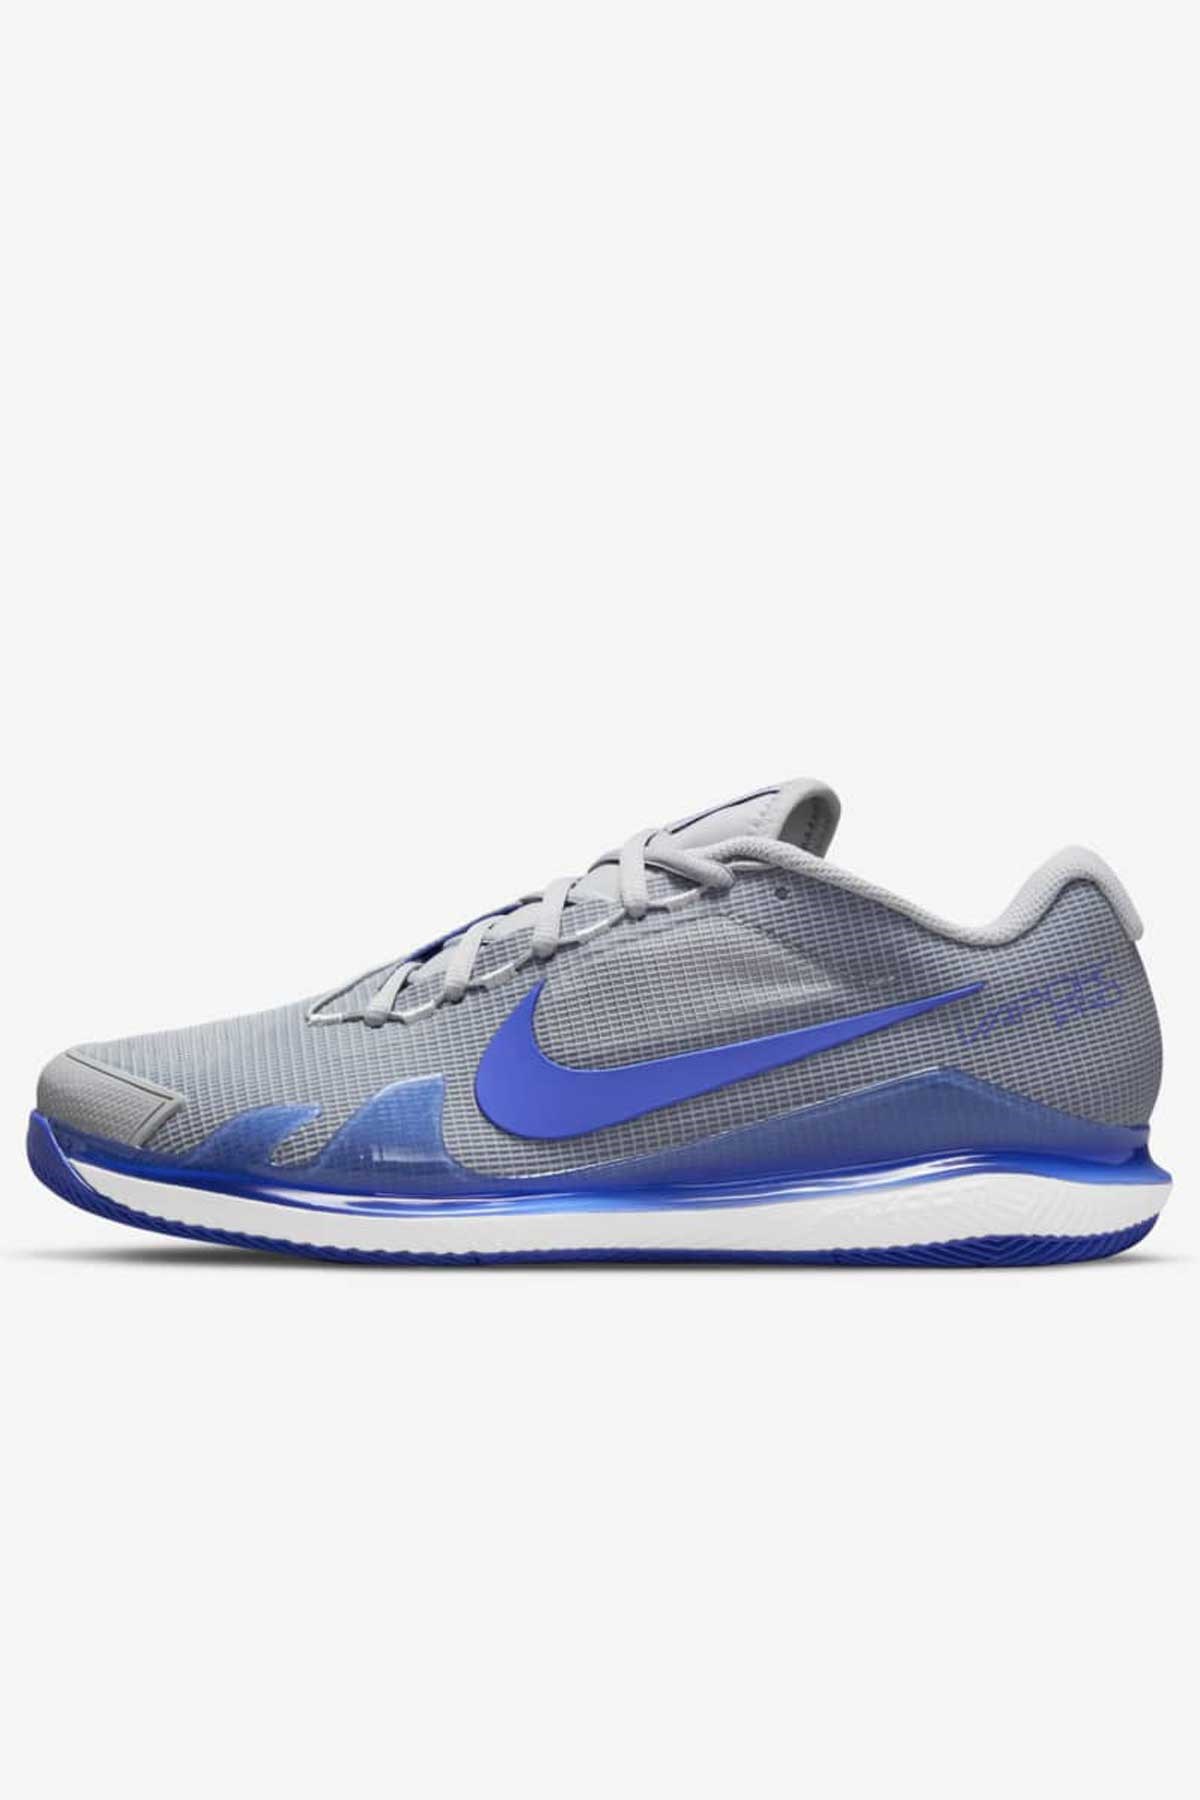 Nike Air Zoom Vapor Pro HC Gri-Mavi Erkek Tenis Ayakkabısı